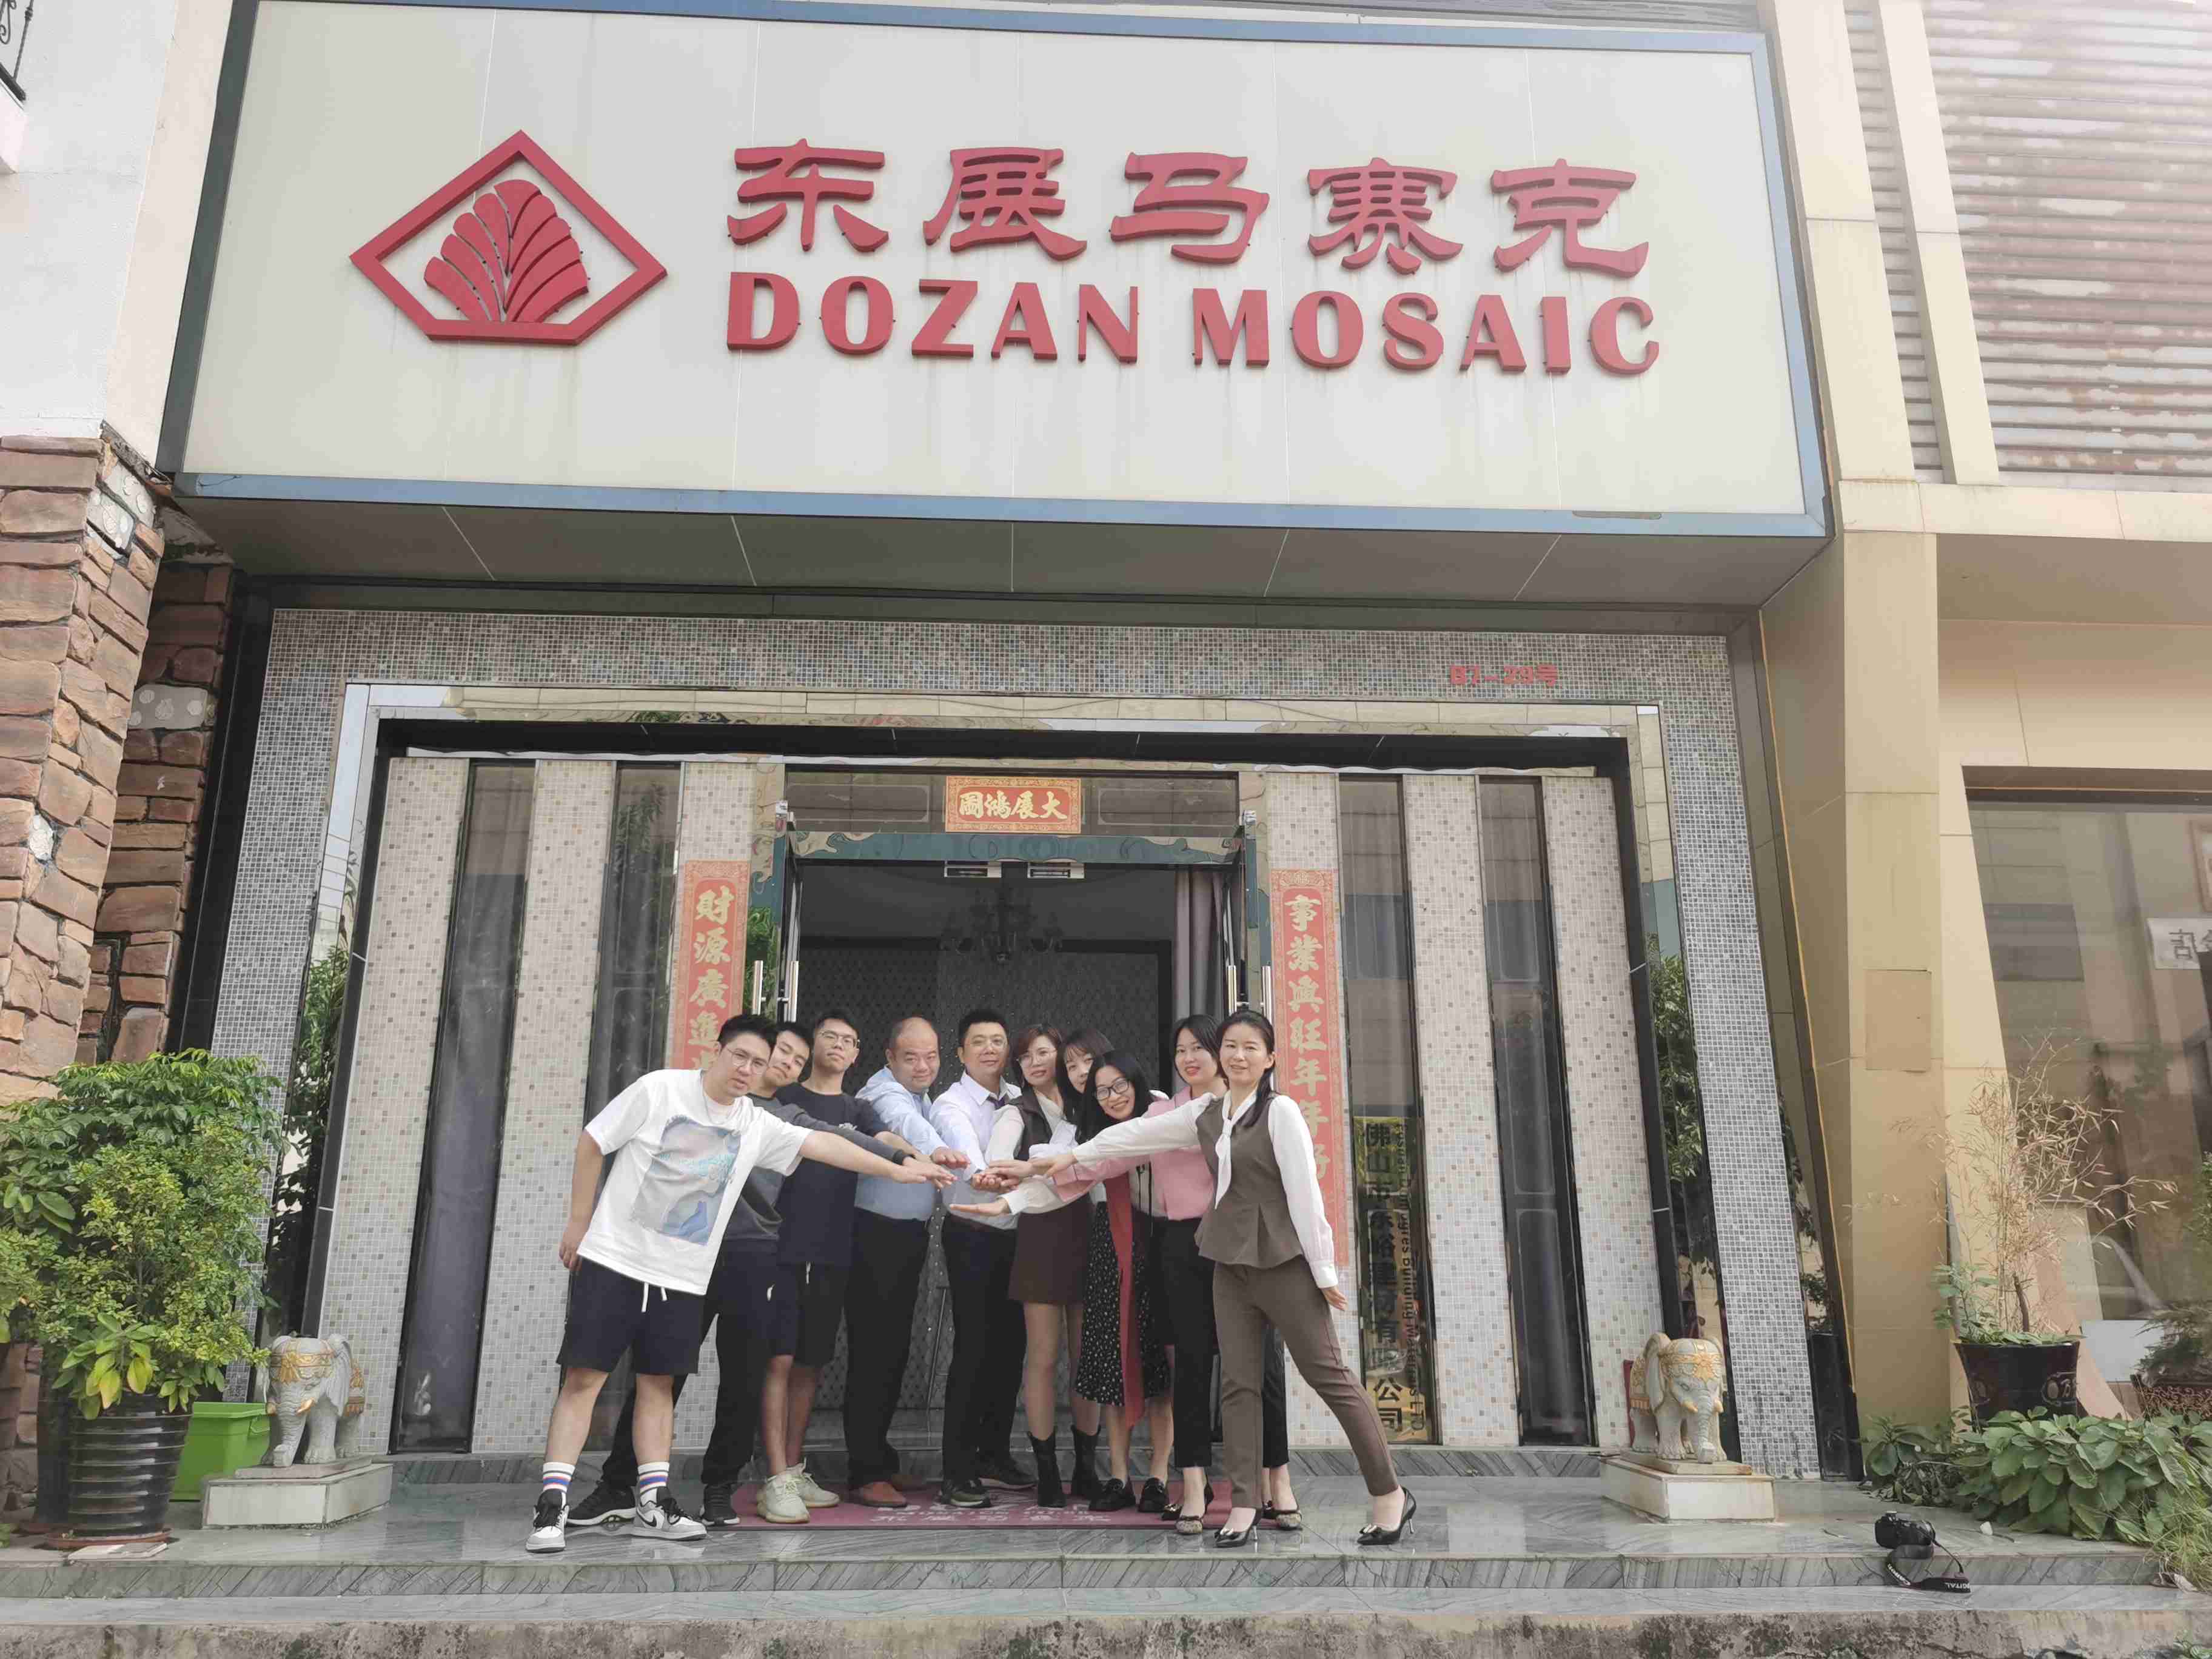 About Dozan mosaic small video